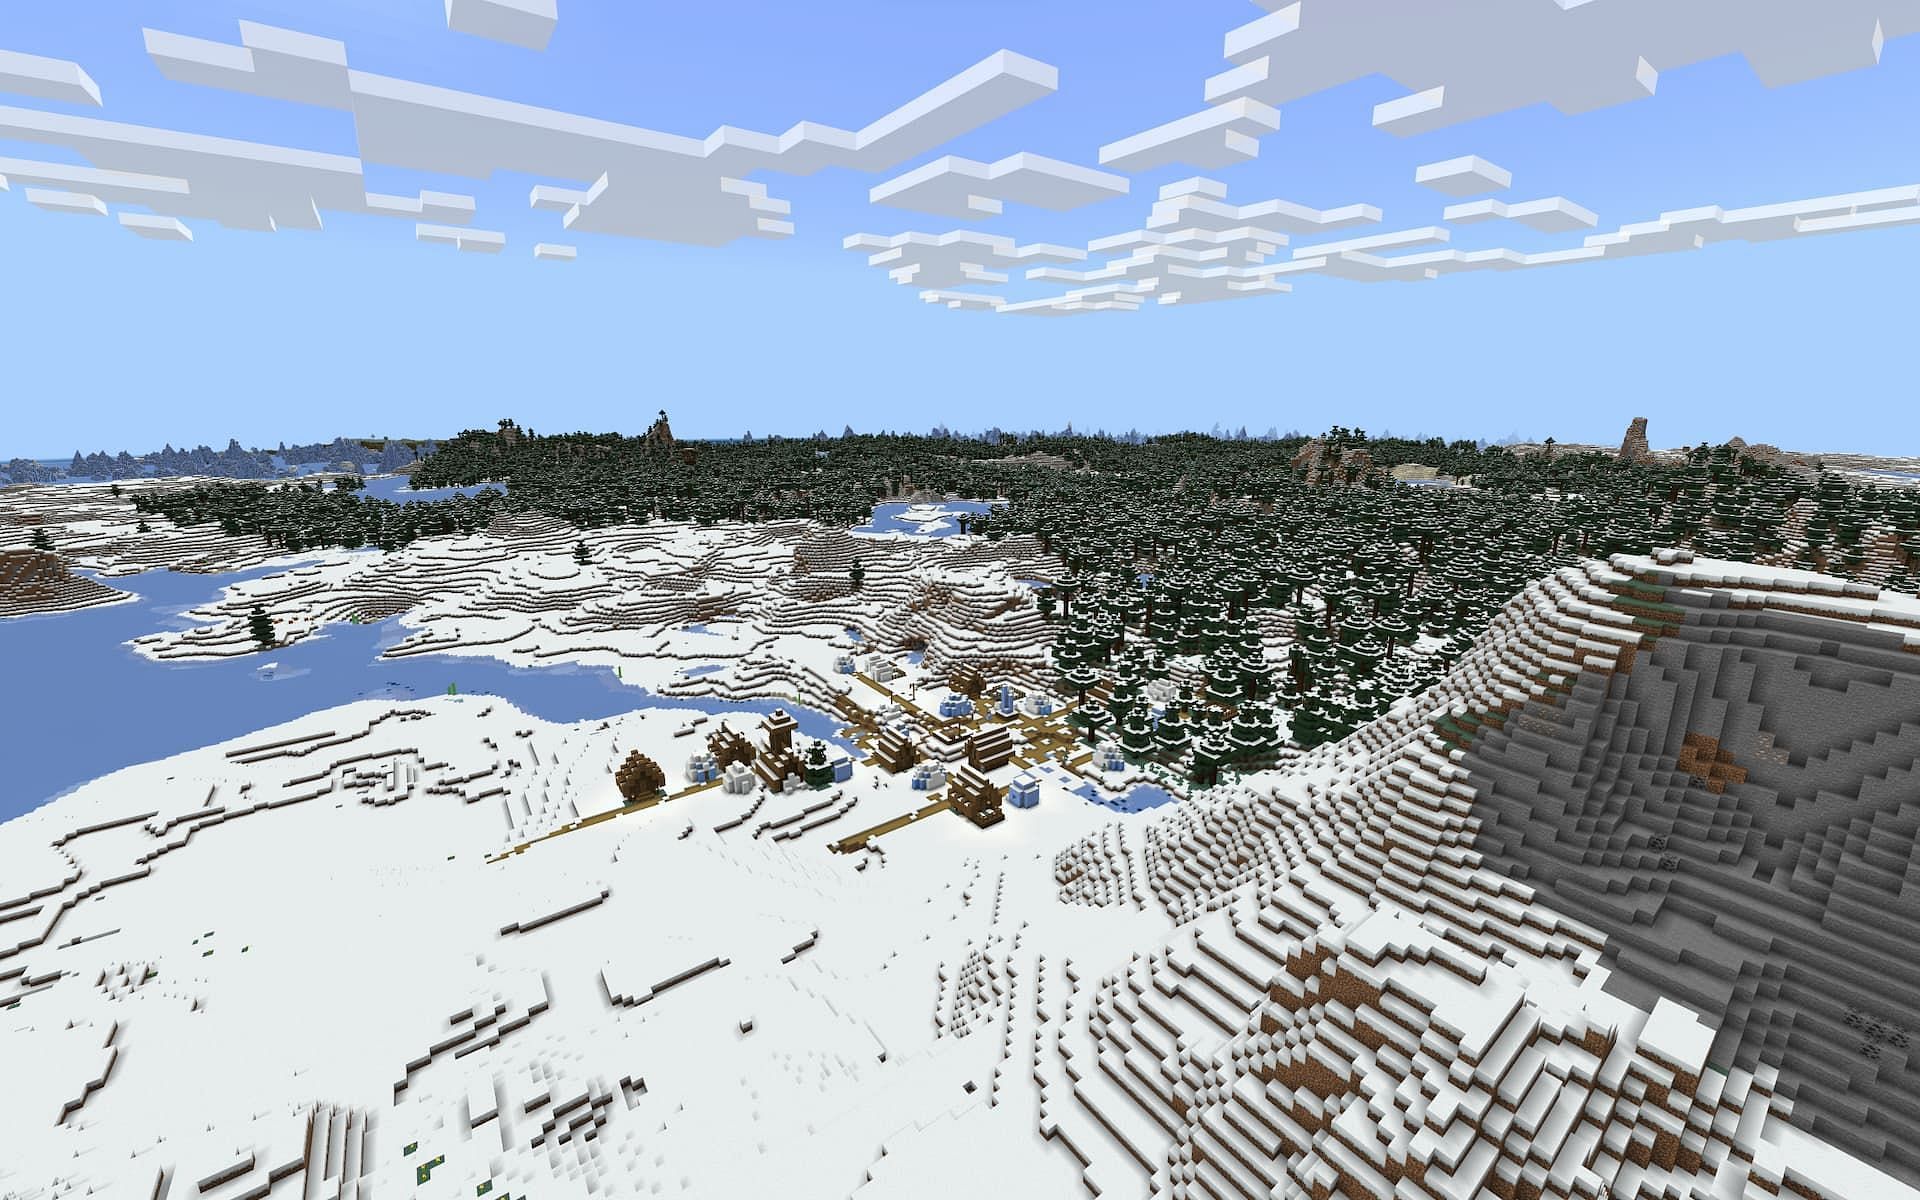 A winter wonderland in Minecraft